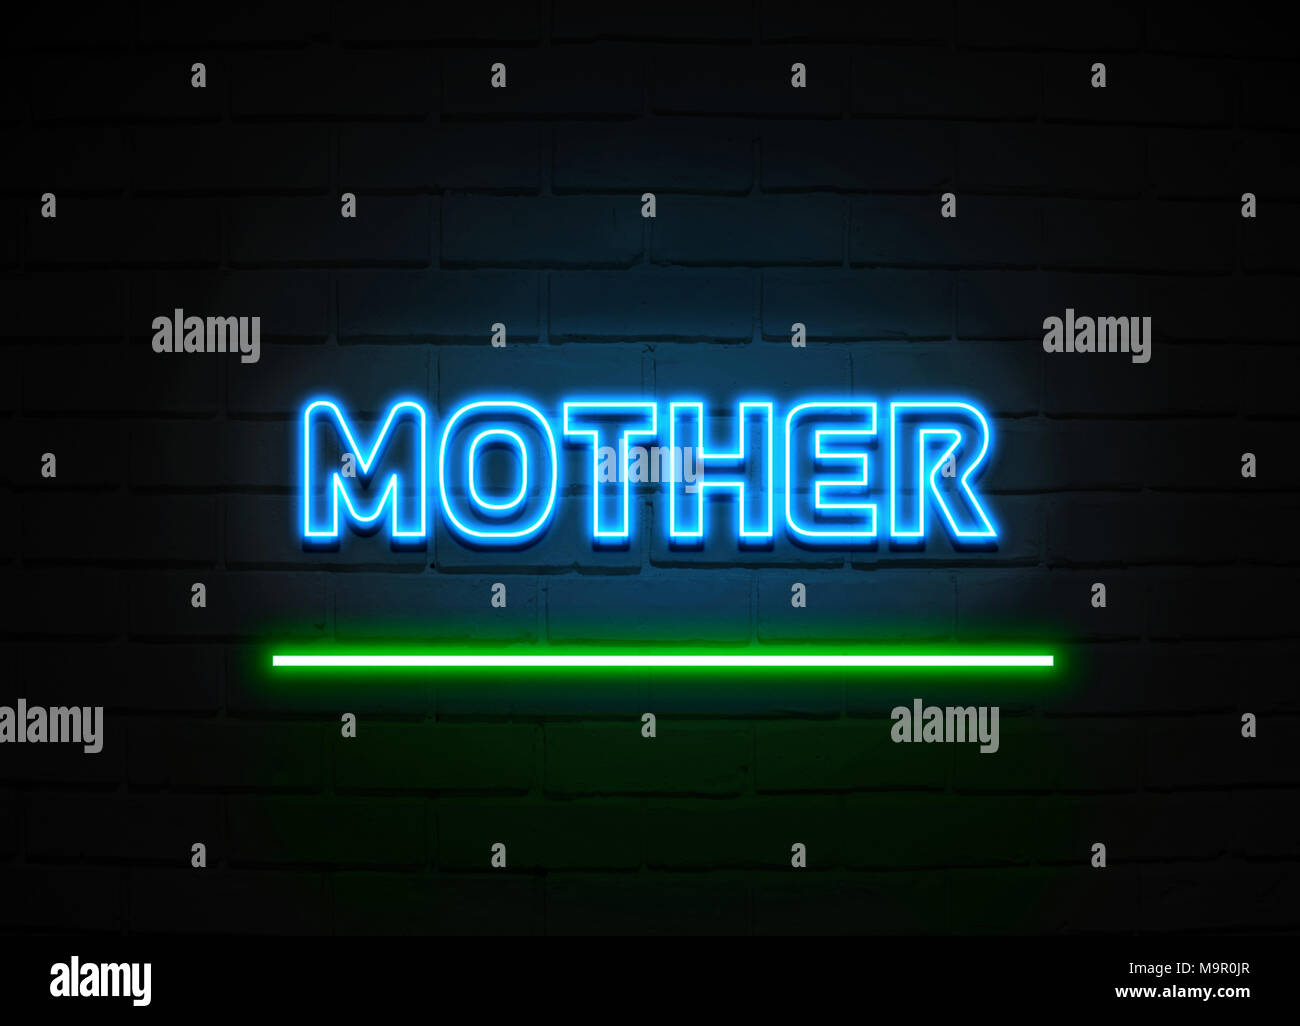 Mutter Leuchtreklame - glühende Leuchtreklame auf brickwall Wand - 3D-Royalty Free Stock Illustration dargestellt. Stockfoto